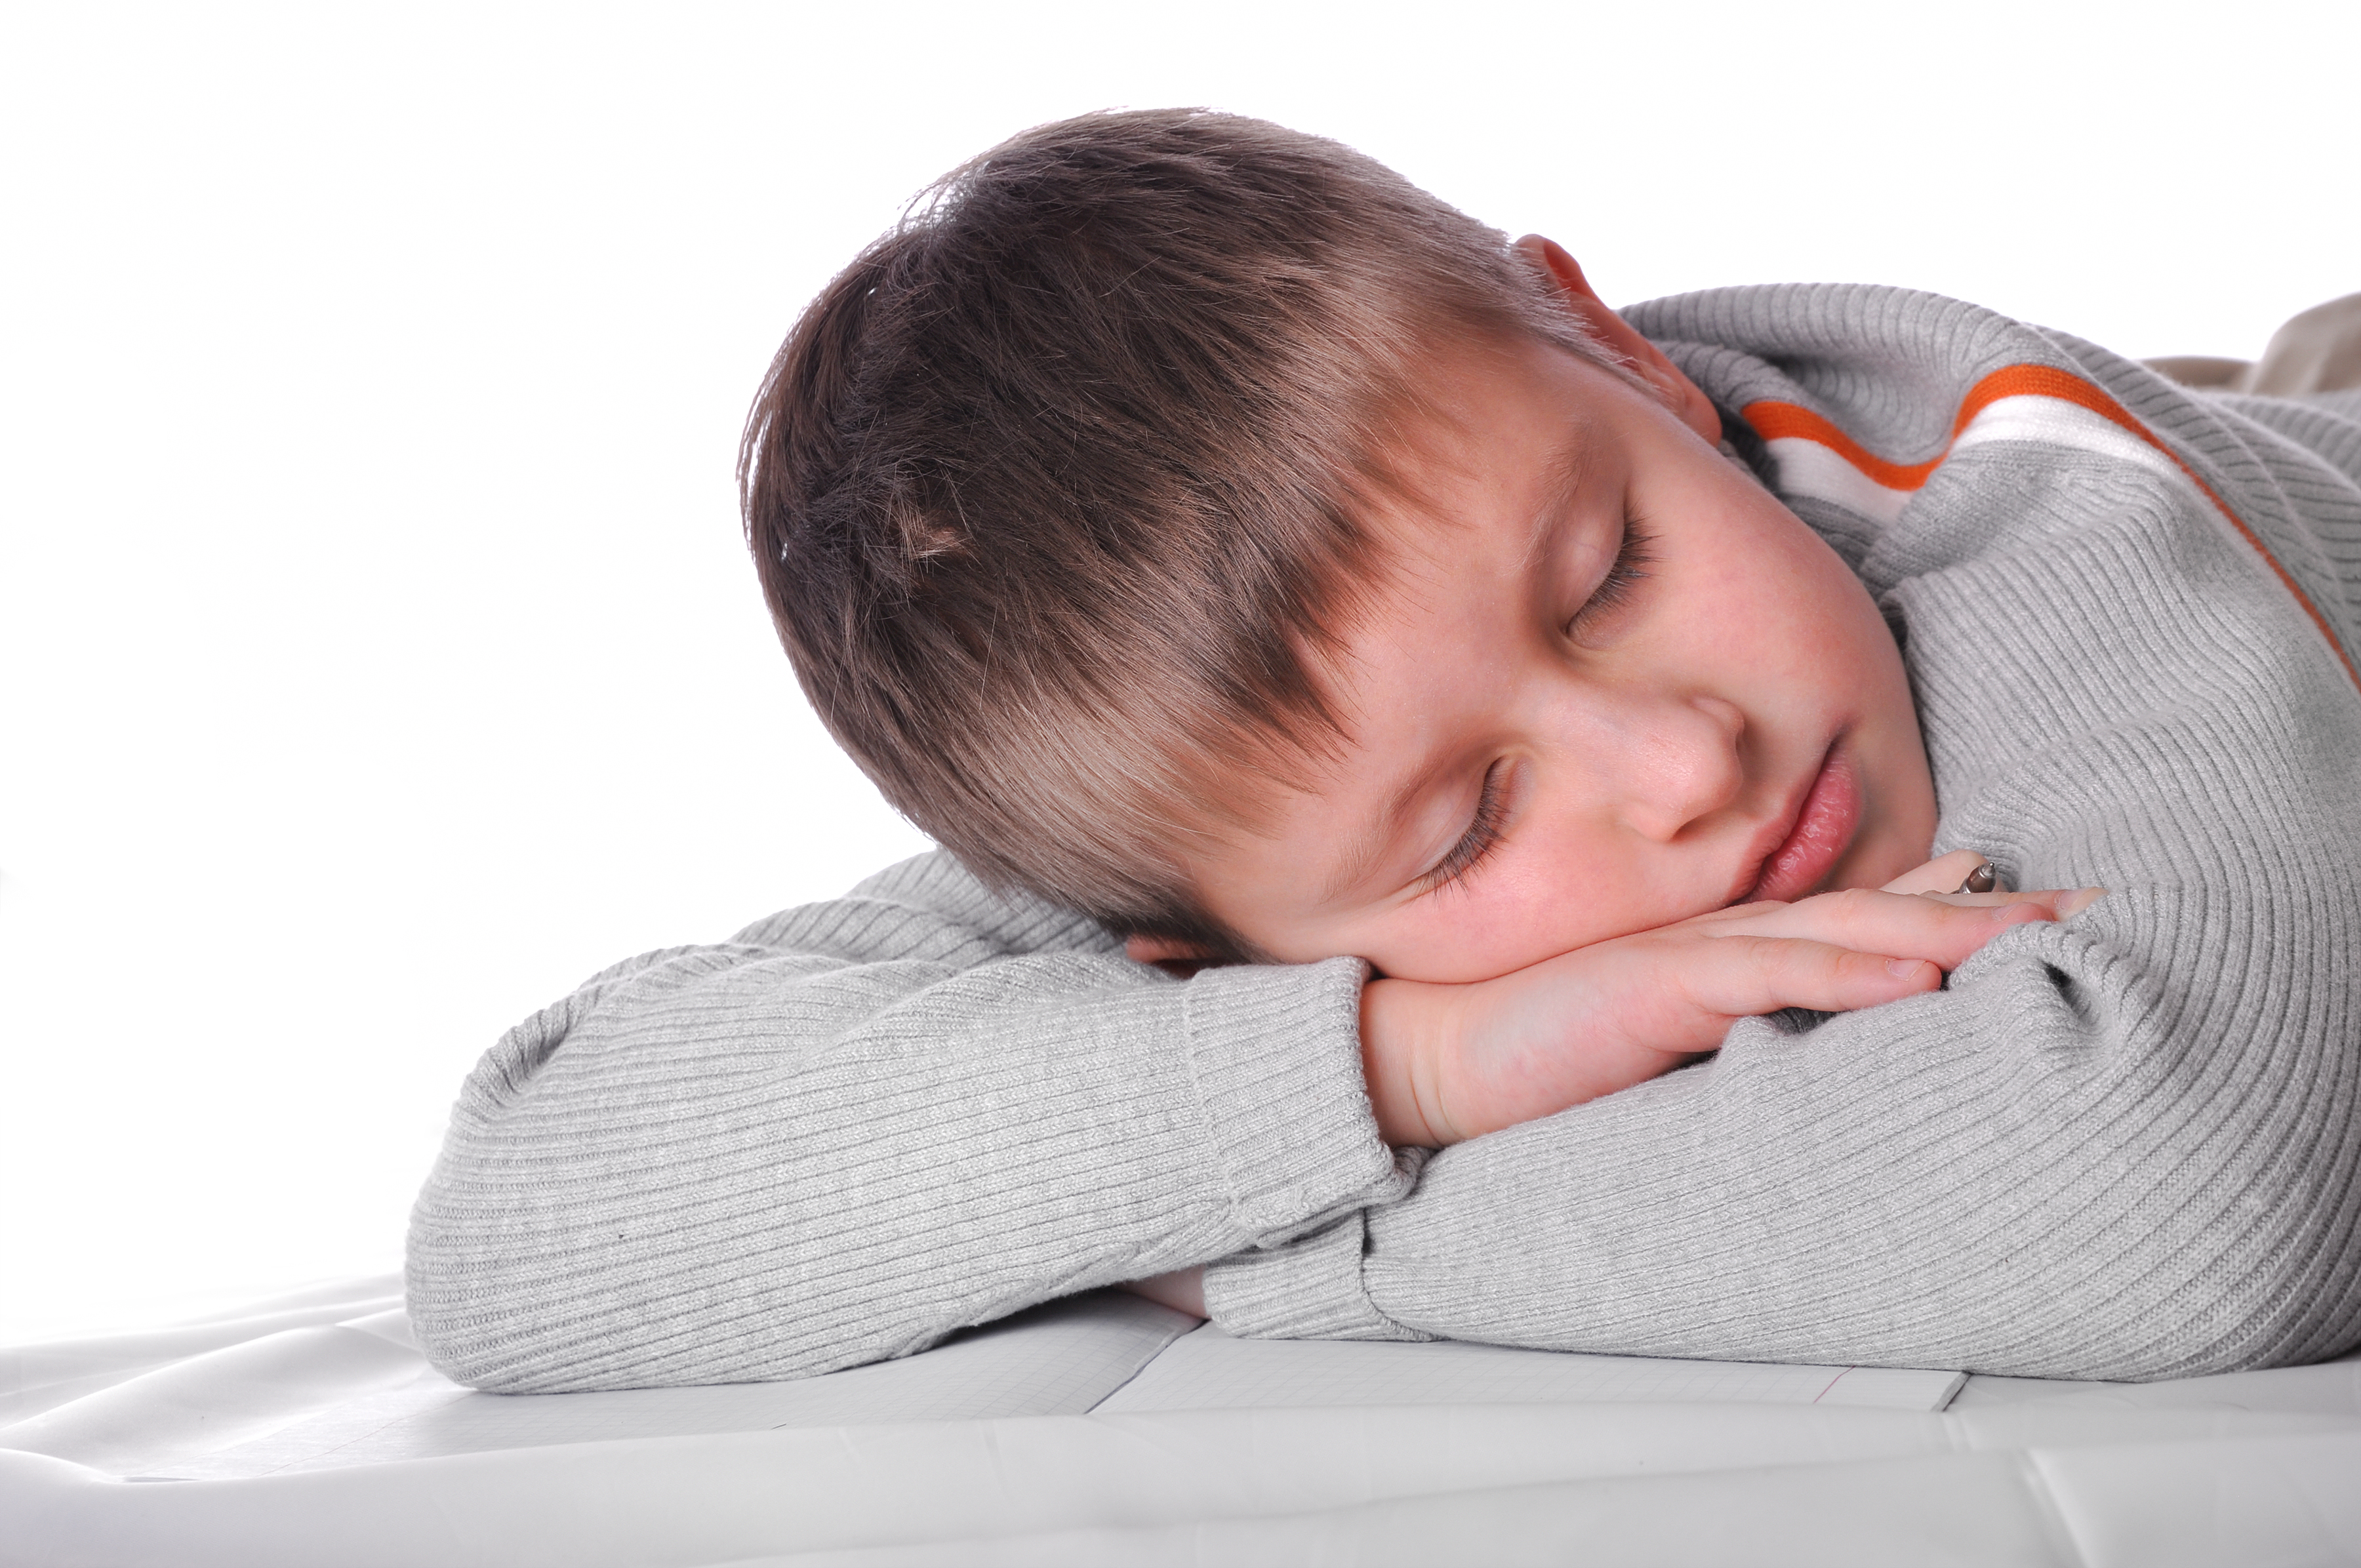 [Translate to English:] Børnene med ADHD faldt gennemsnitlig 45 minutter senere i søvn end børnene i kontrolgruppe, viser studiet fra Aarhus Universitet, Institut for Klinisk Medicin.